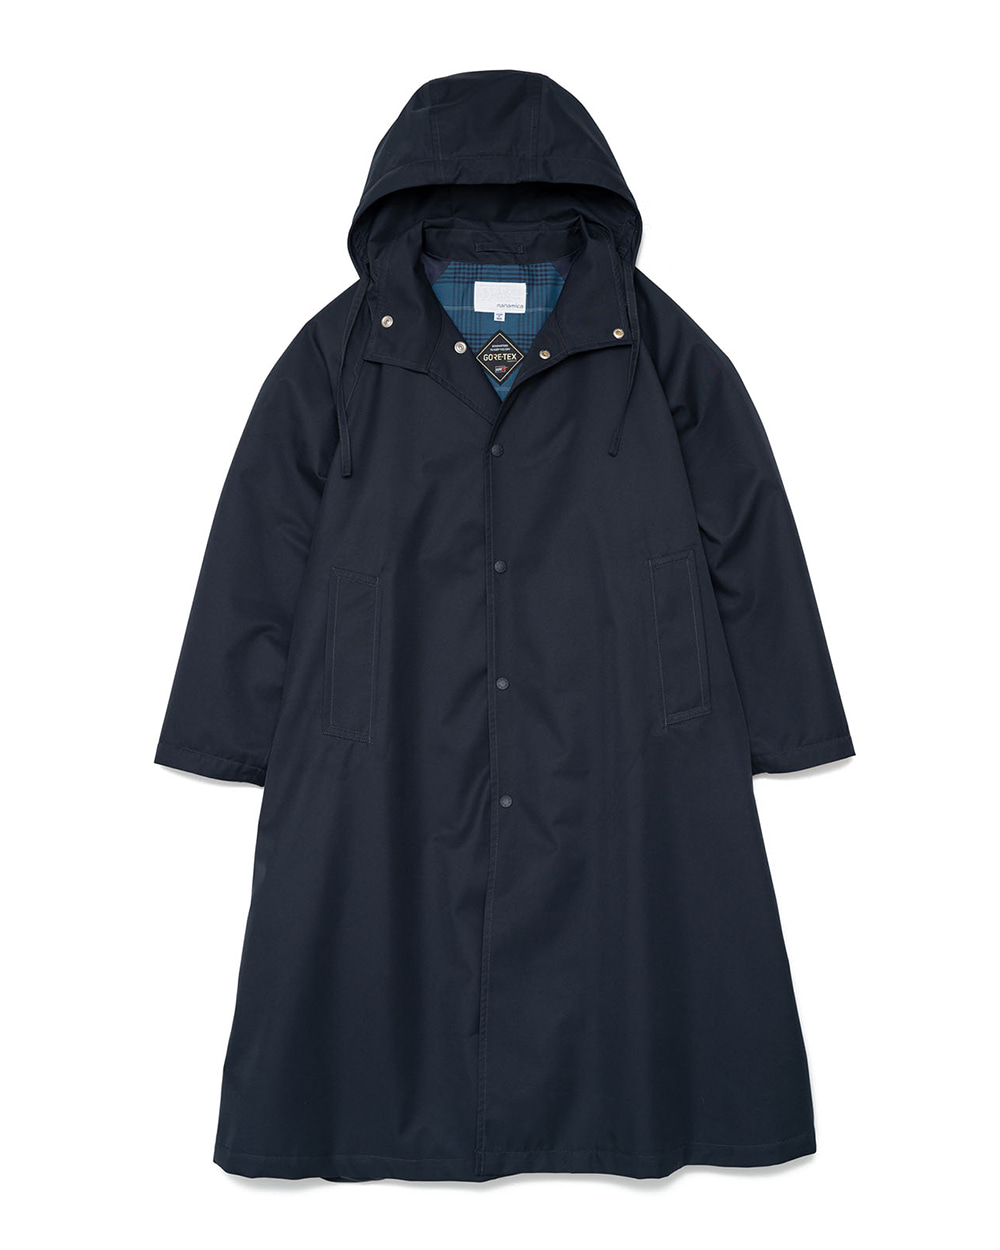 2L GORE-TEX Hooded Coat (Navy)